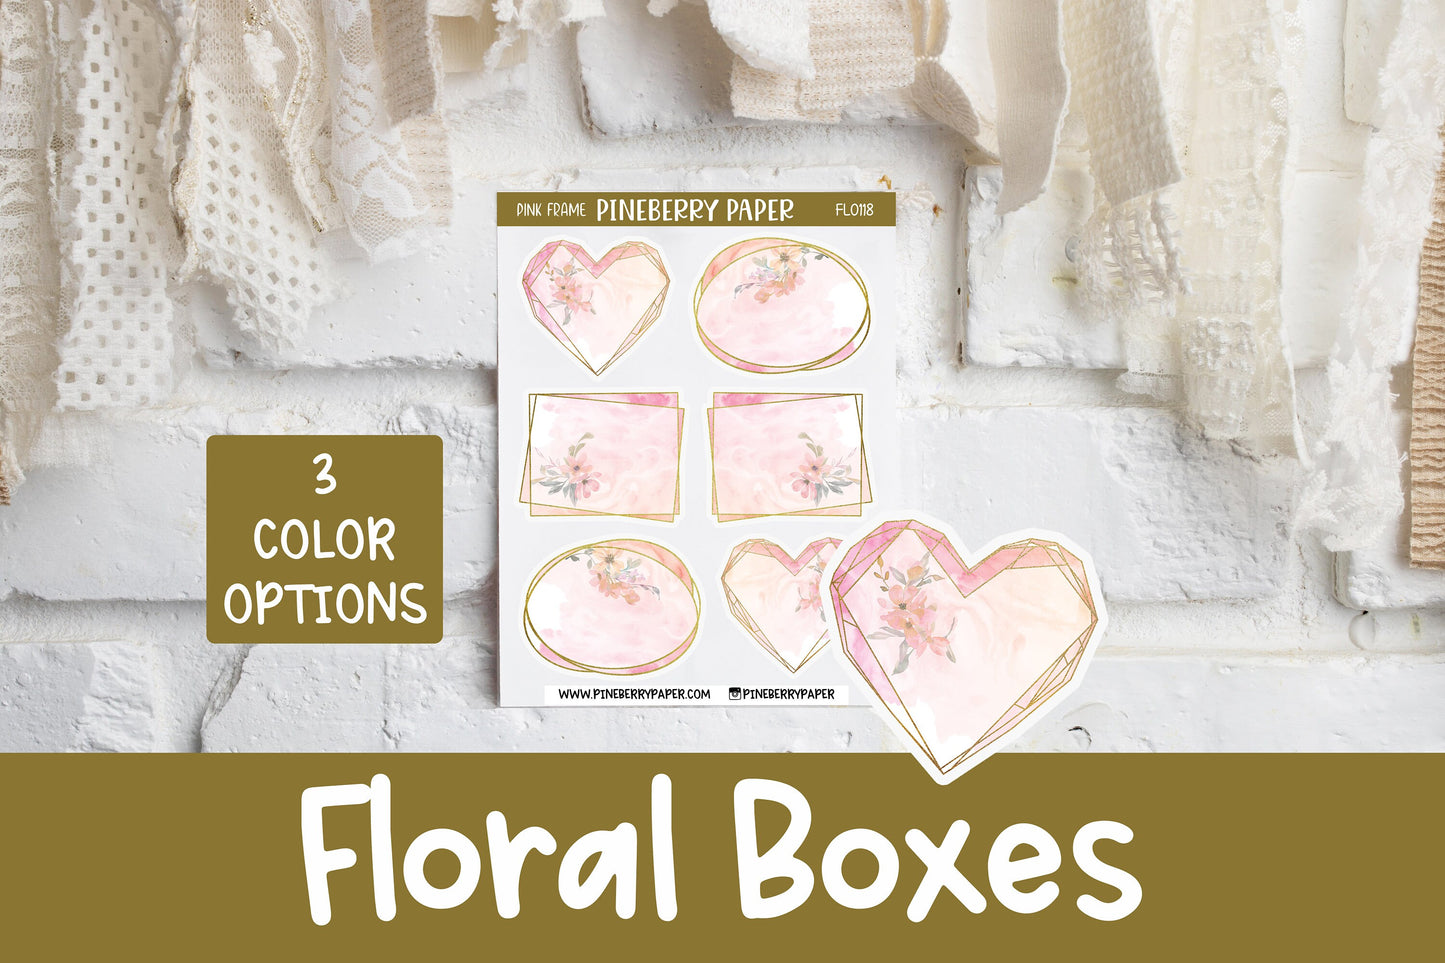 Floral Boxes | FL0118